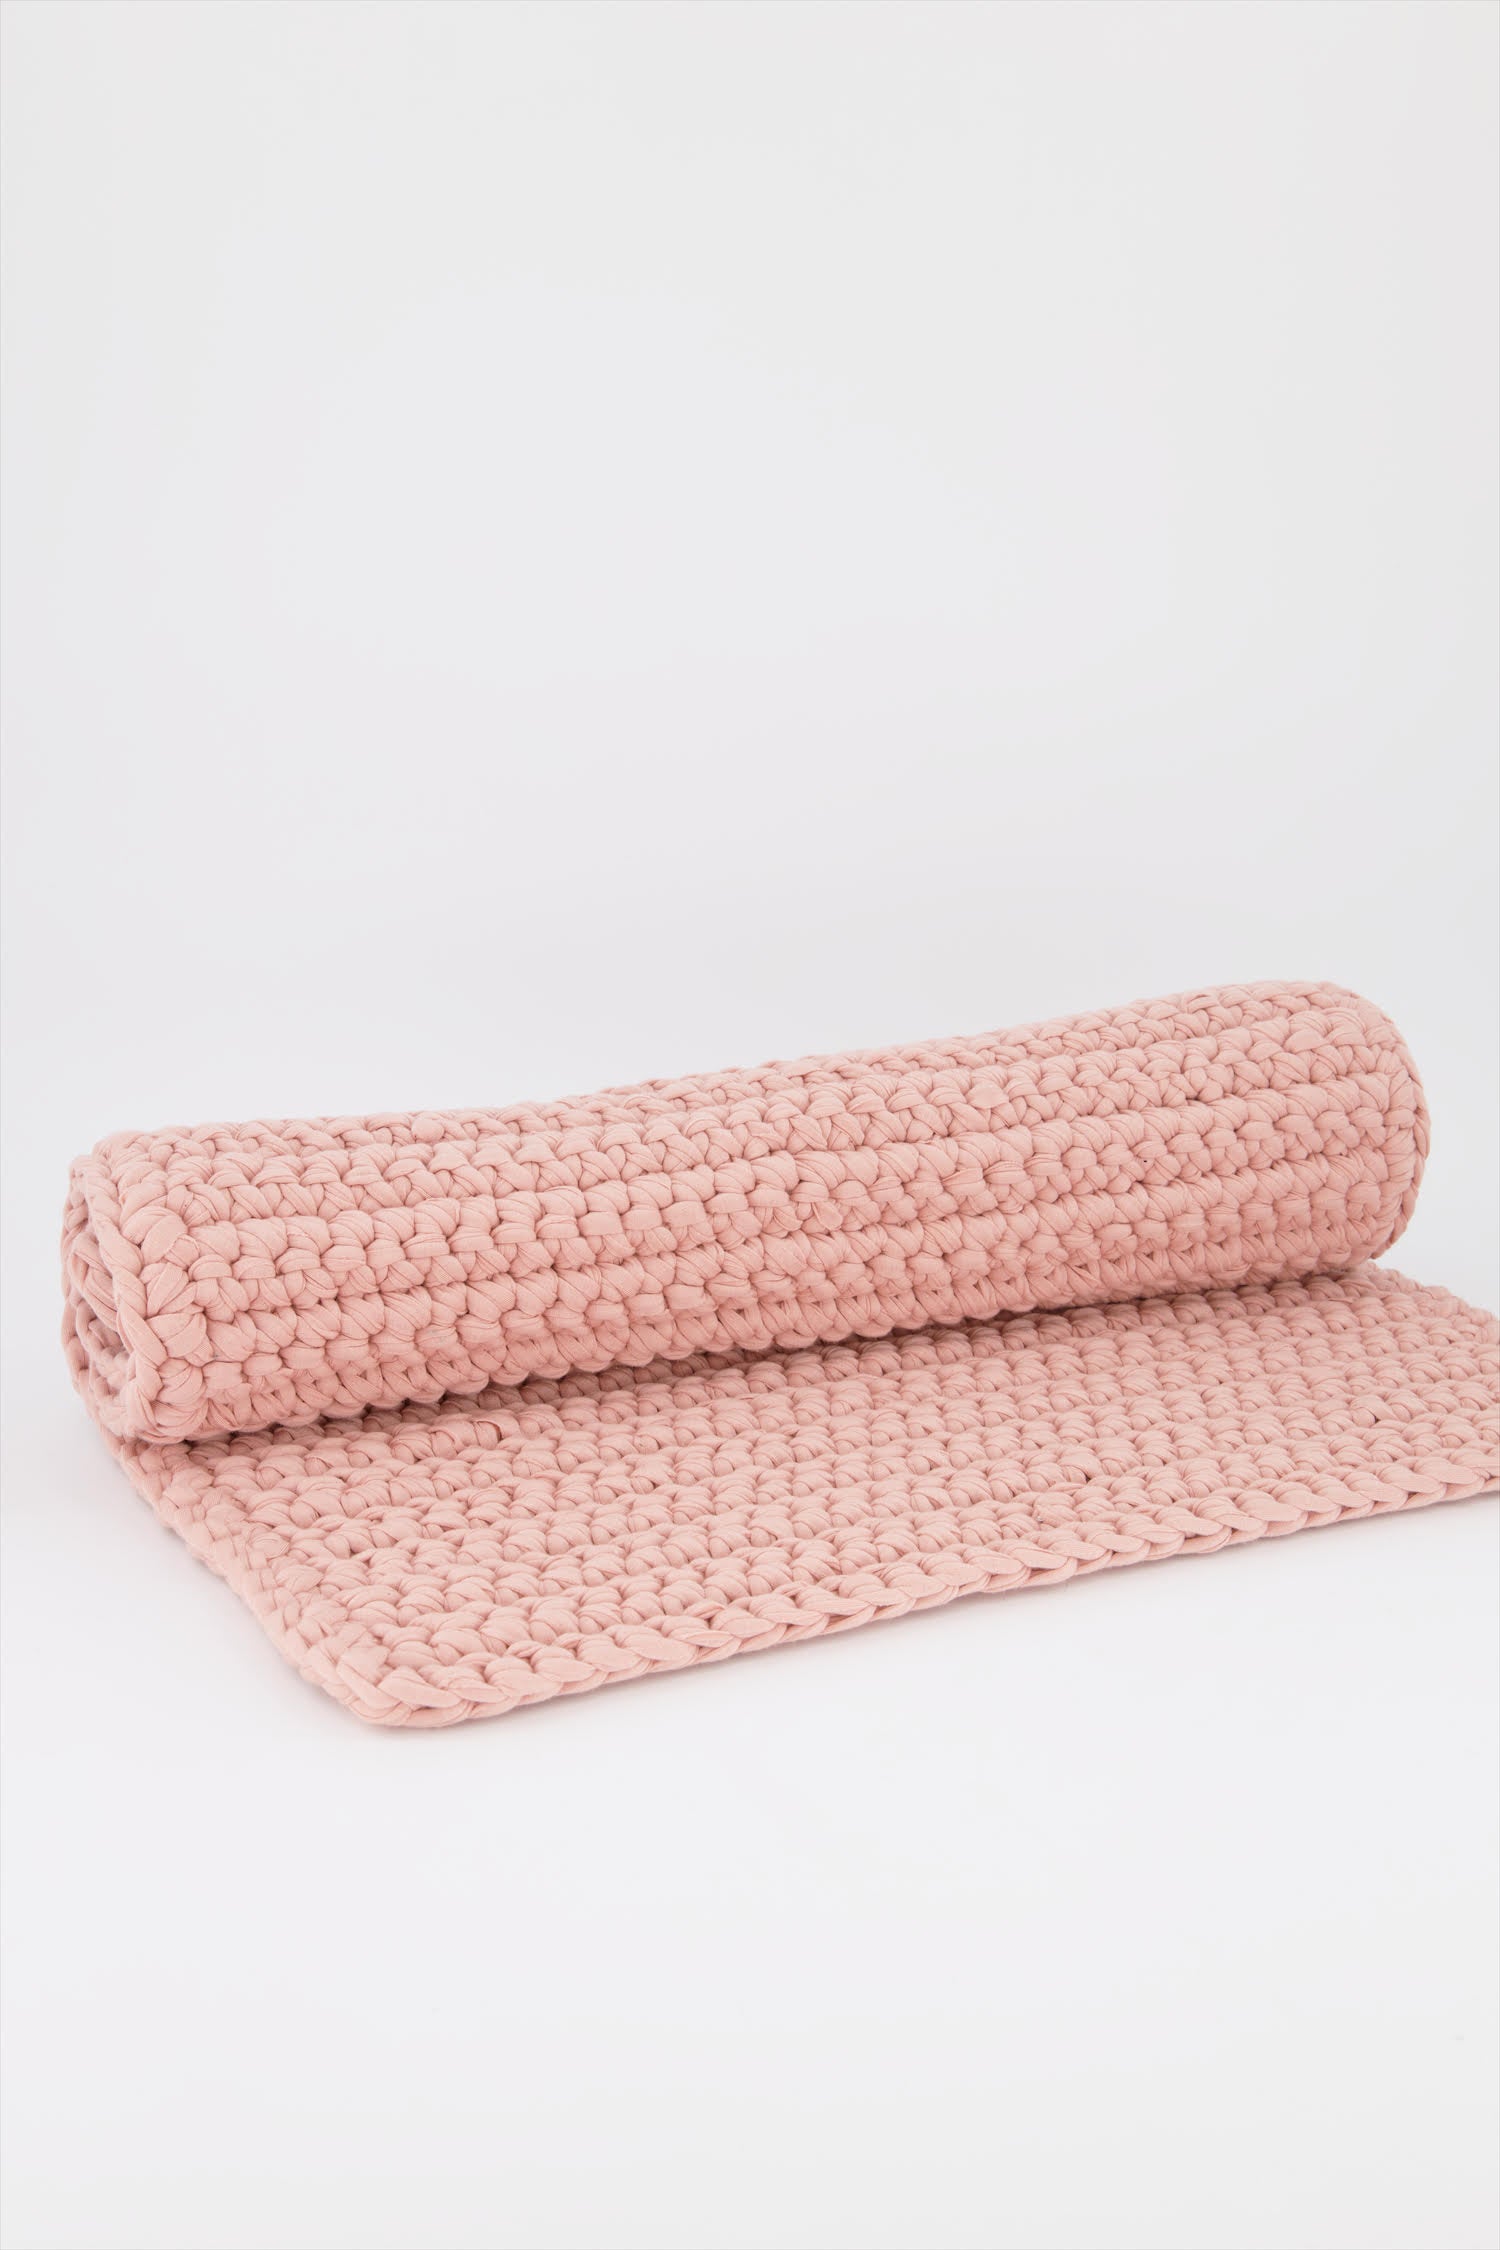 Bathmats_Crochet_Handmade_Empowerment_Pink